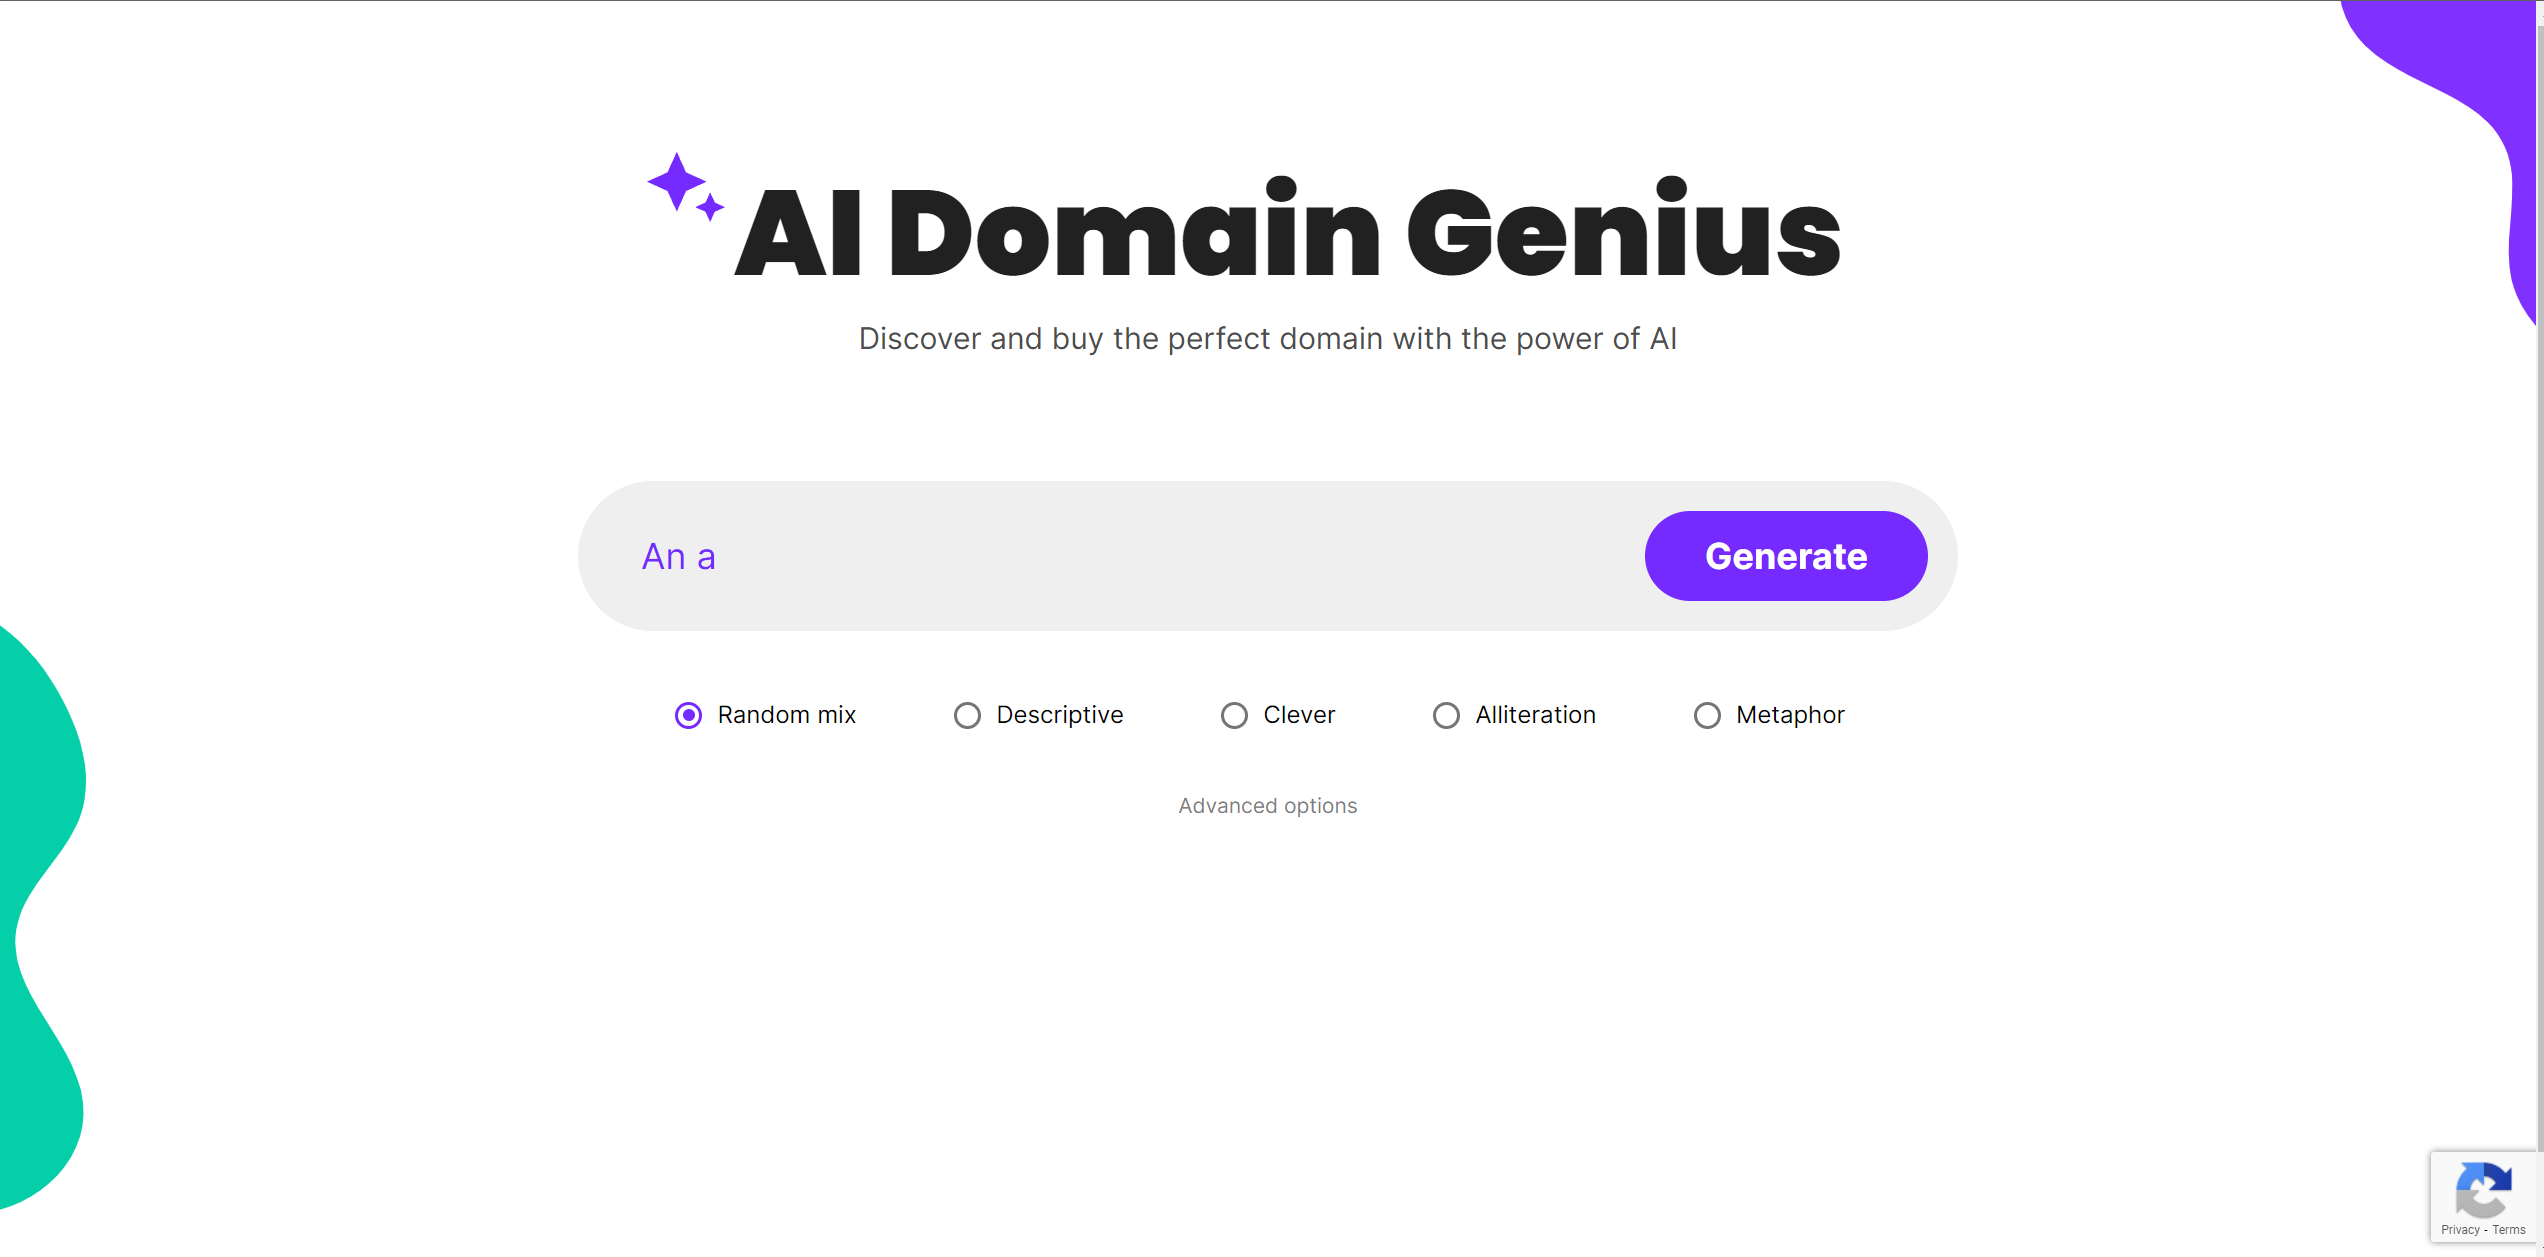 Post: AI Domain Genius